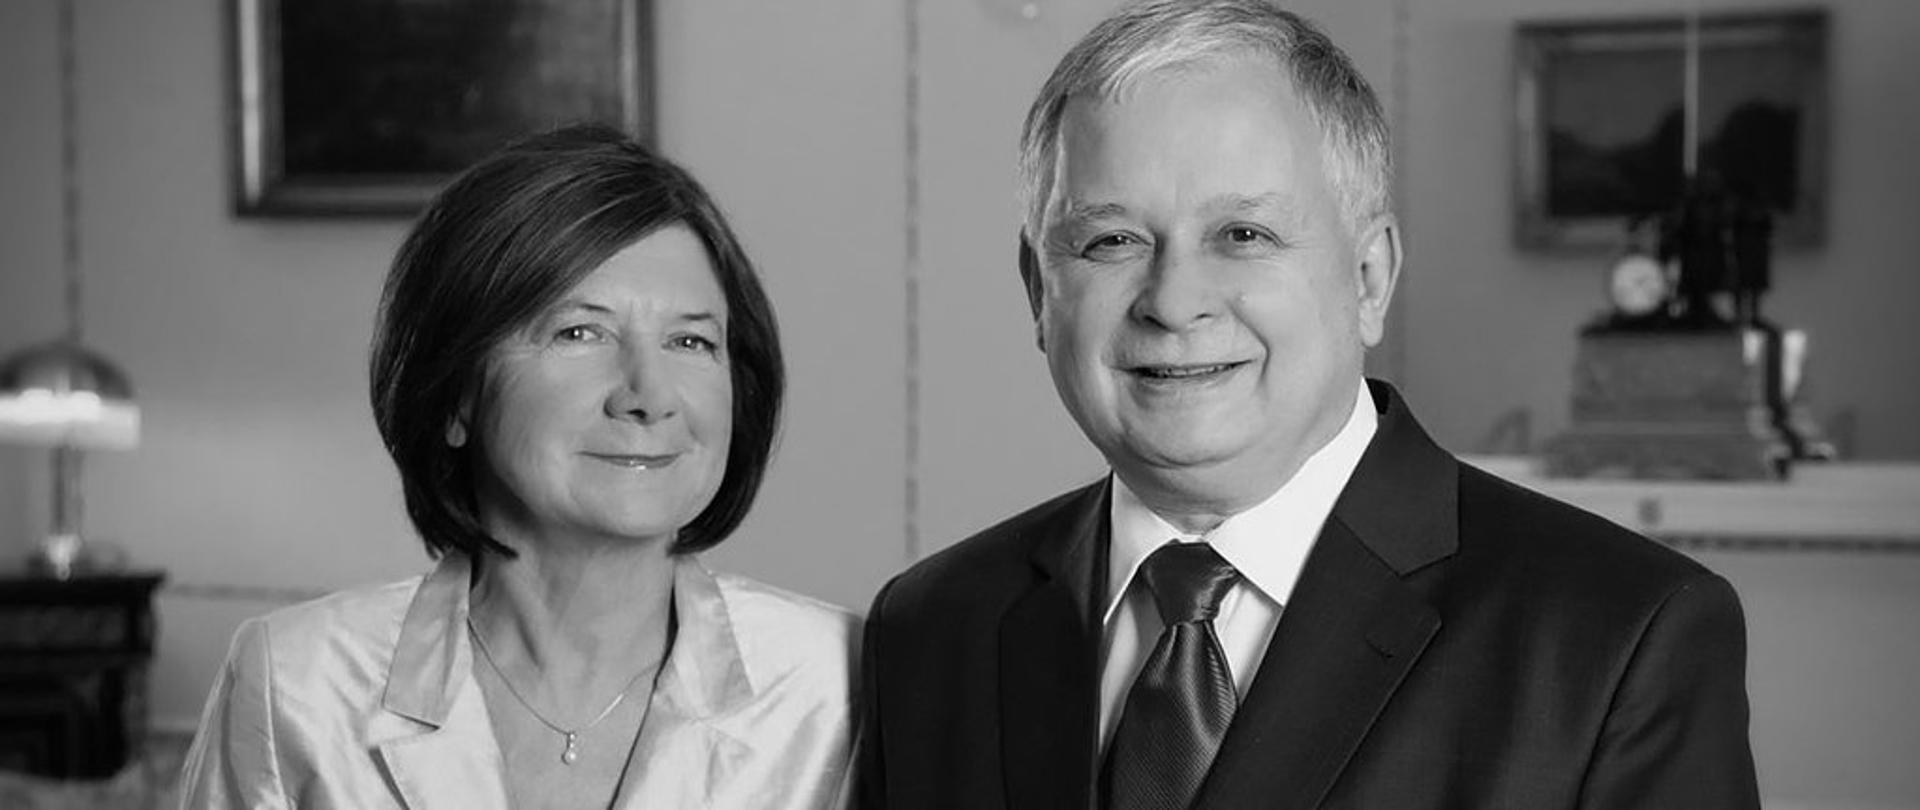 Prezydent RP Lech Kaczyński wraz z Małżonką Marią Kaczyńską